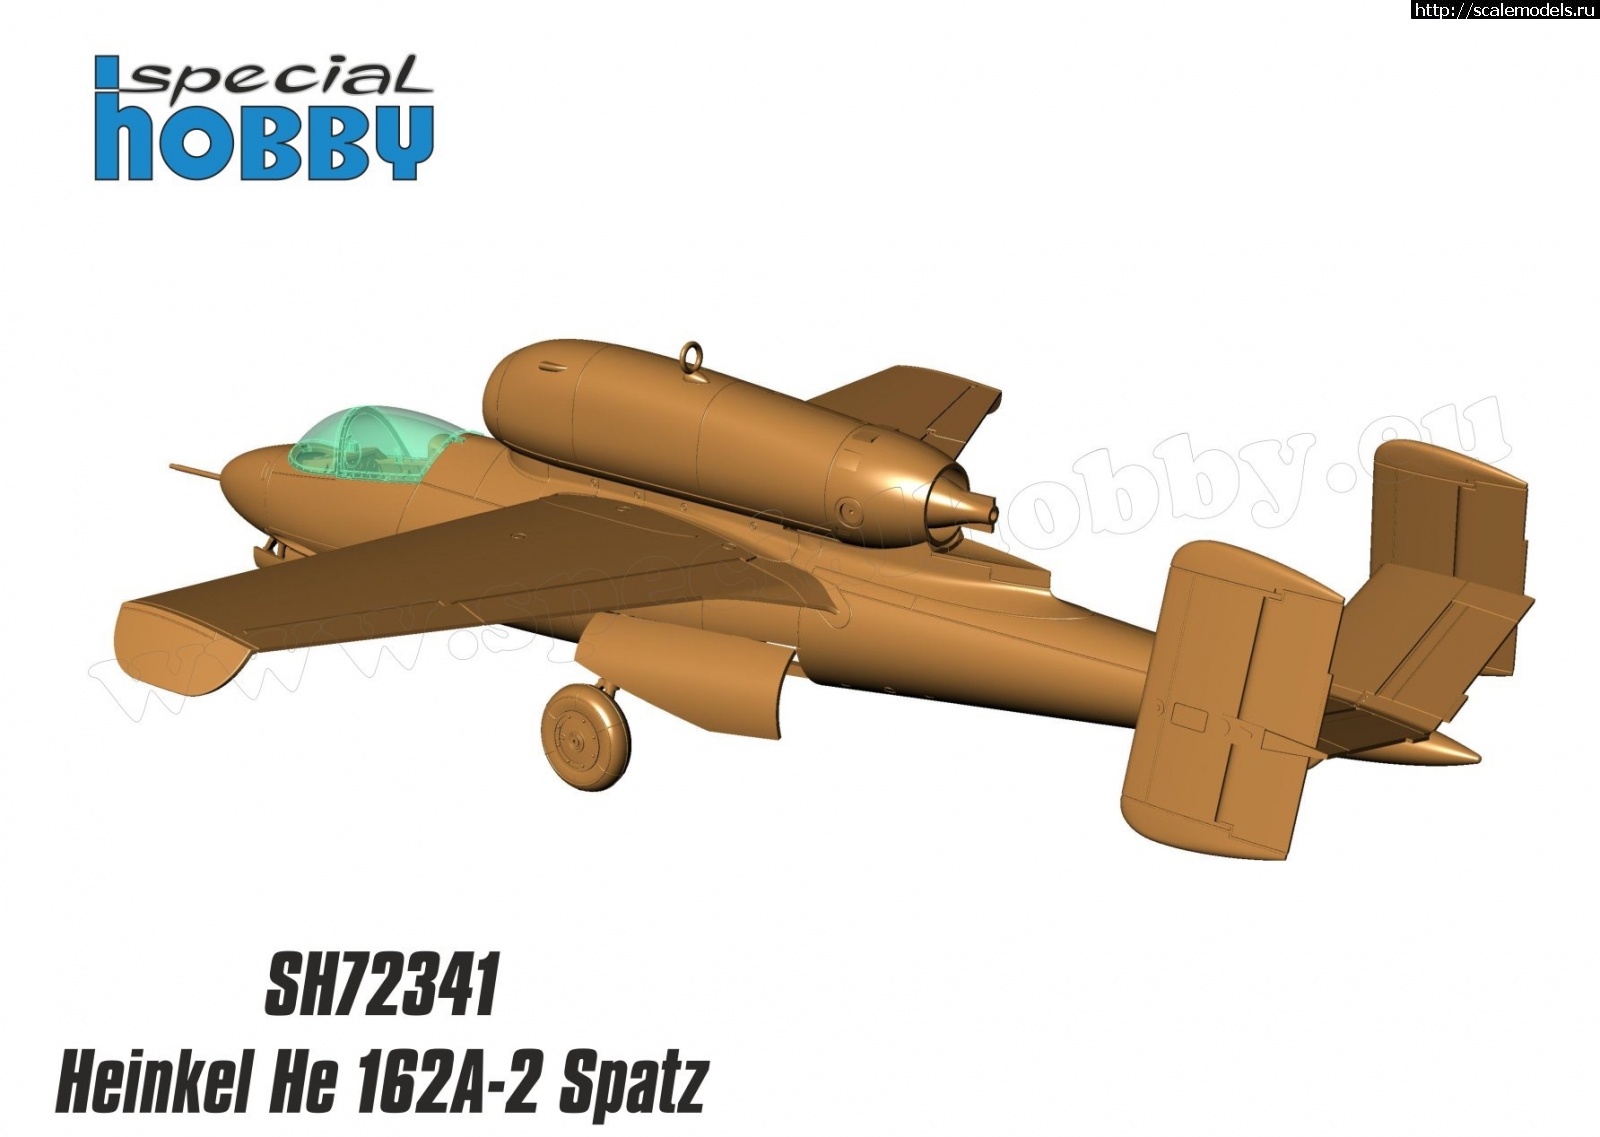 1579848652_04E5E577-82DB-4F83-9BFF-4D3E6D58B279.jpeg :  Special Hobby 1/72 Heinkel He 162A Spatz - 3D-  